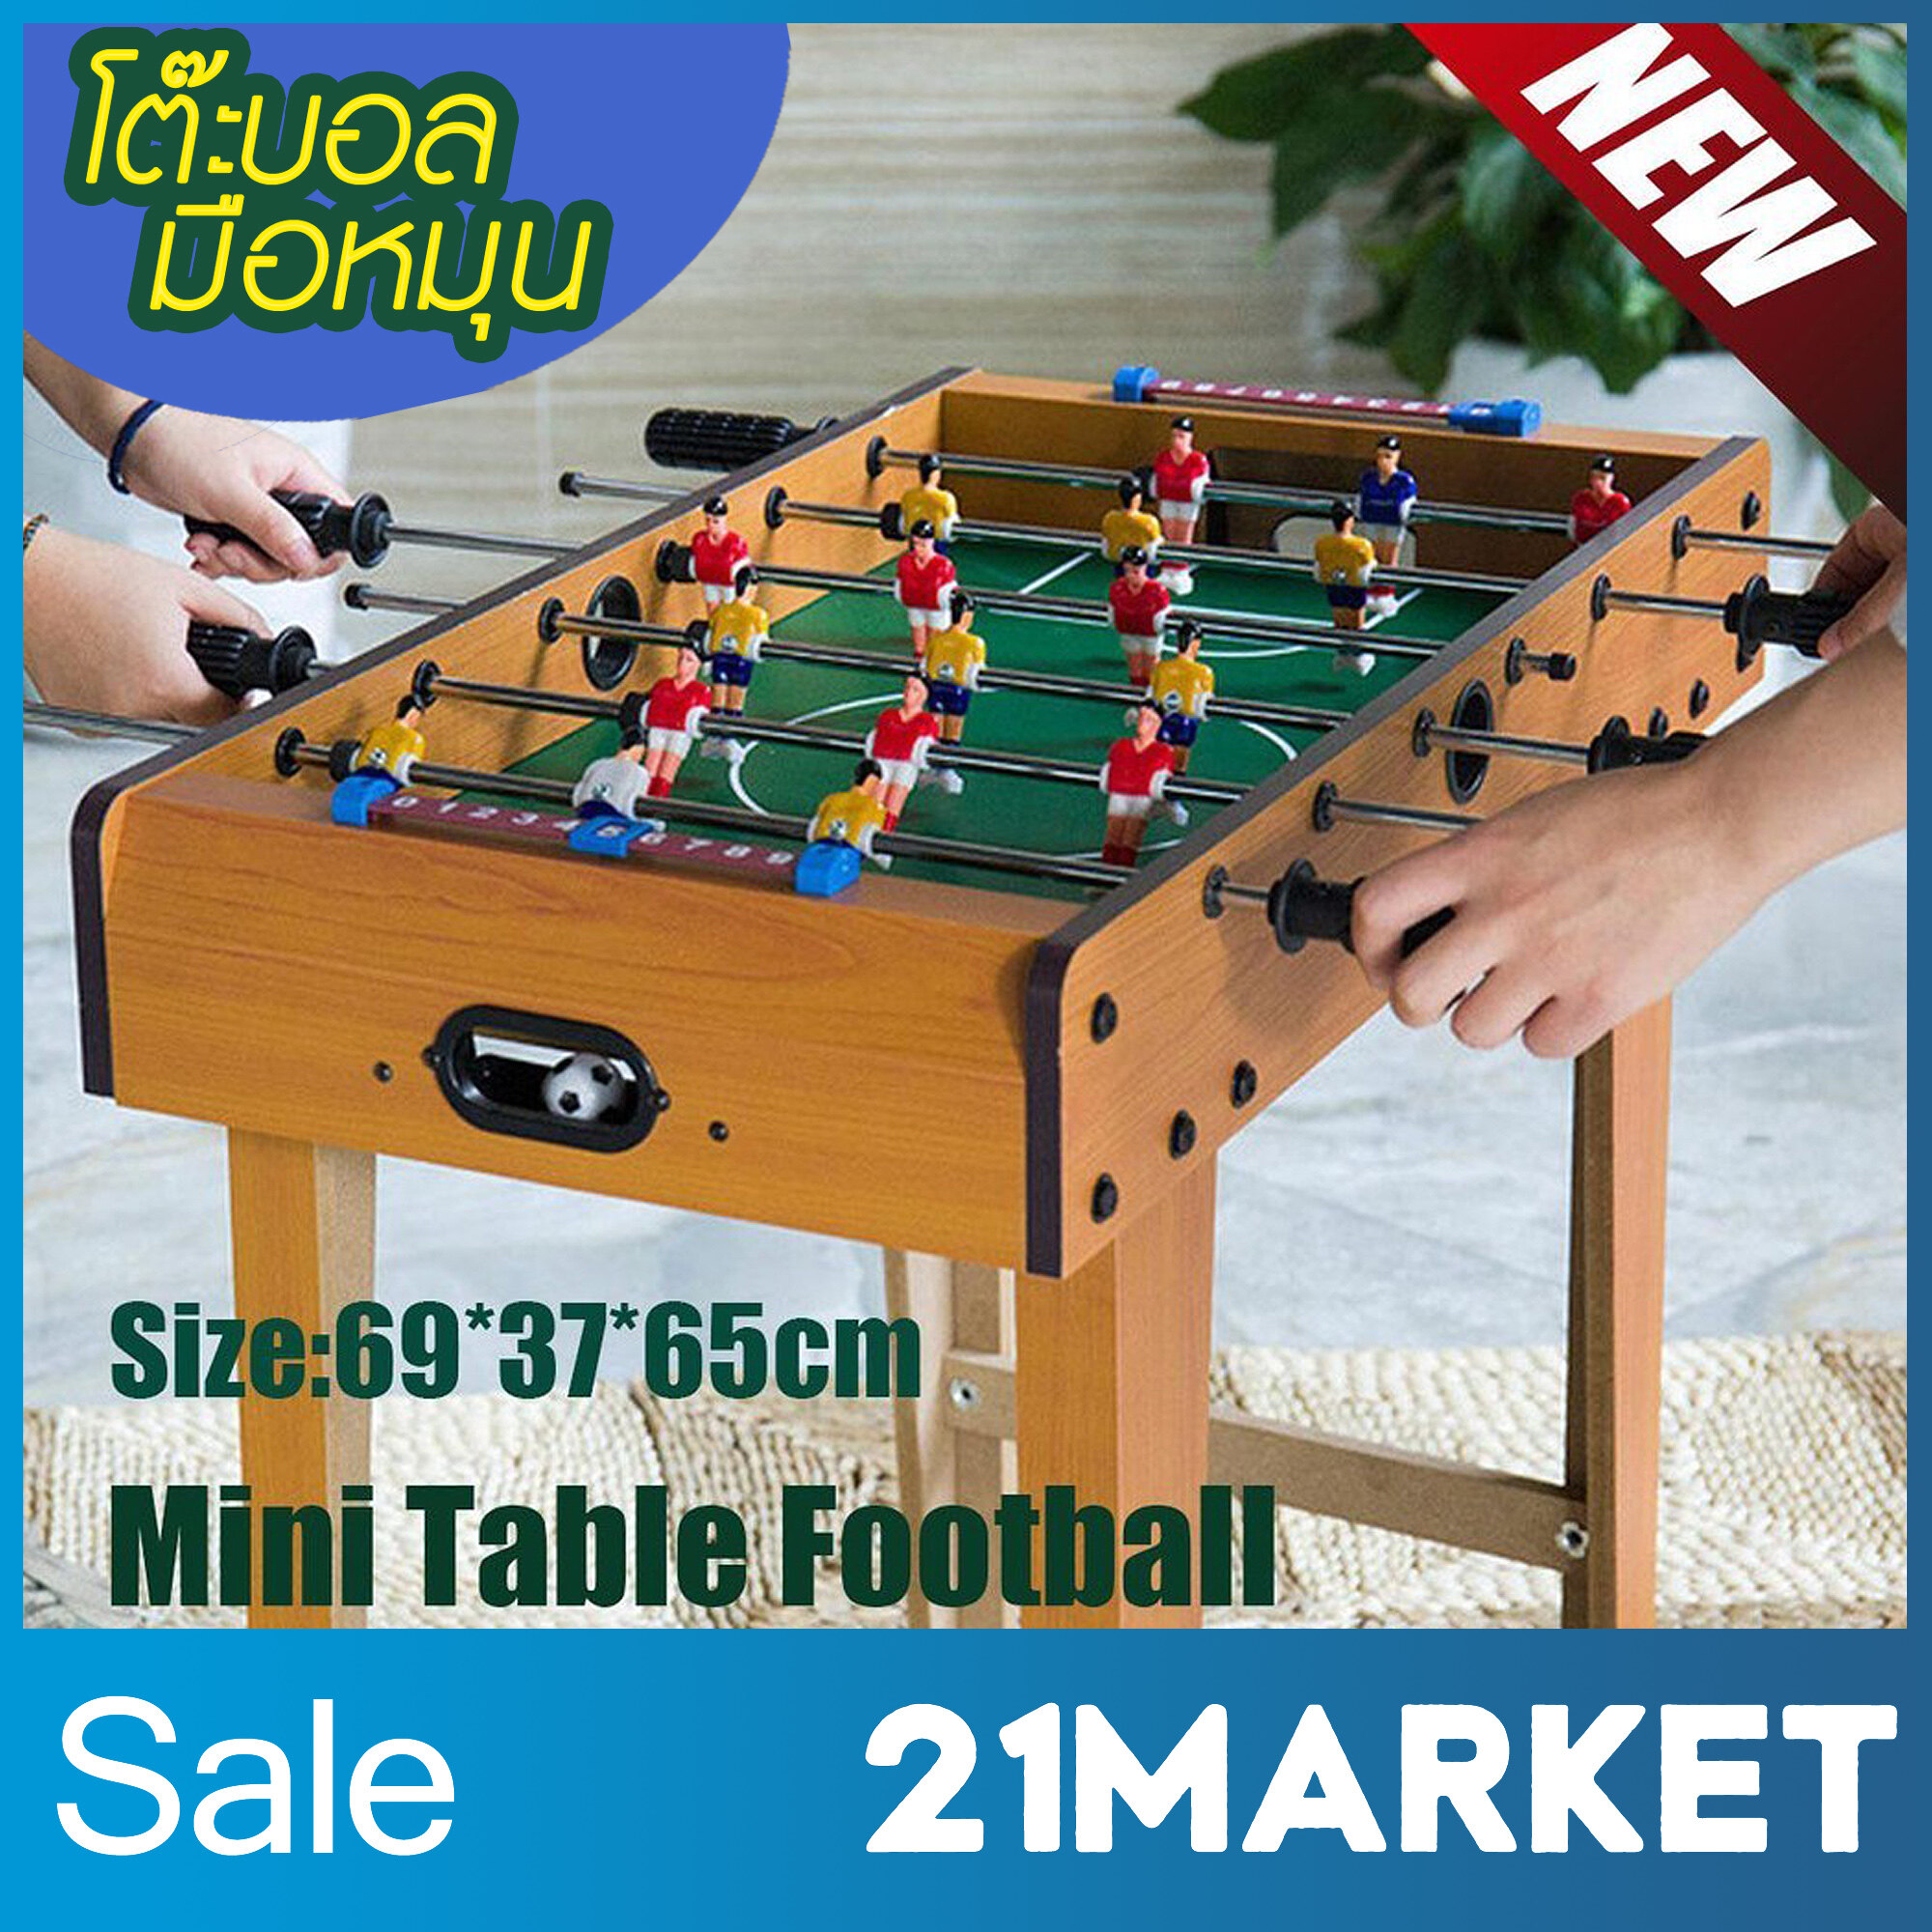 สินค้าพร้อมส่ง เกมส์โต๊ะบอล โต๊ะบอลมือหมุน โต๊ะฟุตบอล โต๊ะบันเทิง เกมแม่ลูก ของเล่น ของเล่นฟุตบอล football table game ขนาด 37*69*62 ซม.